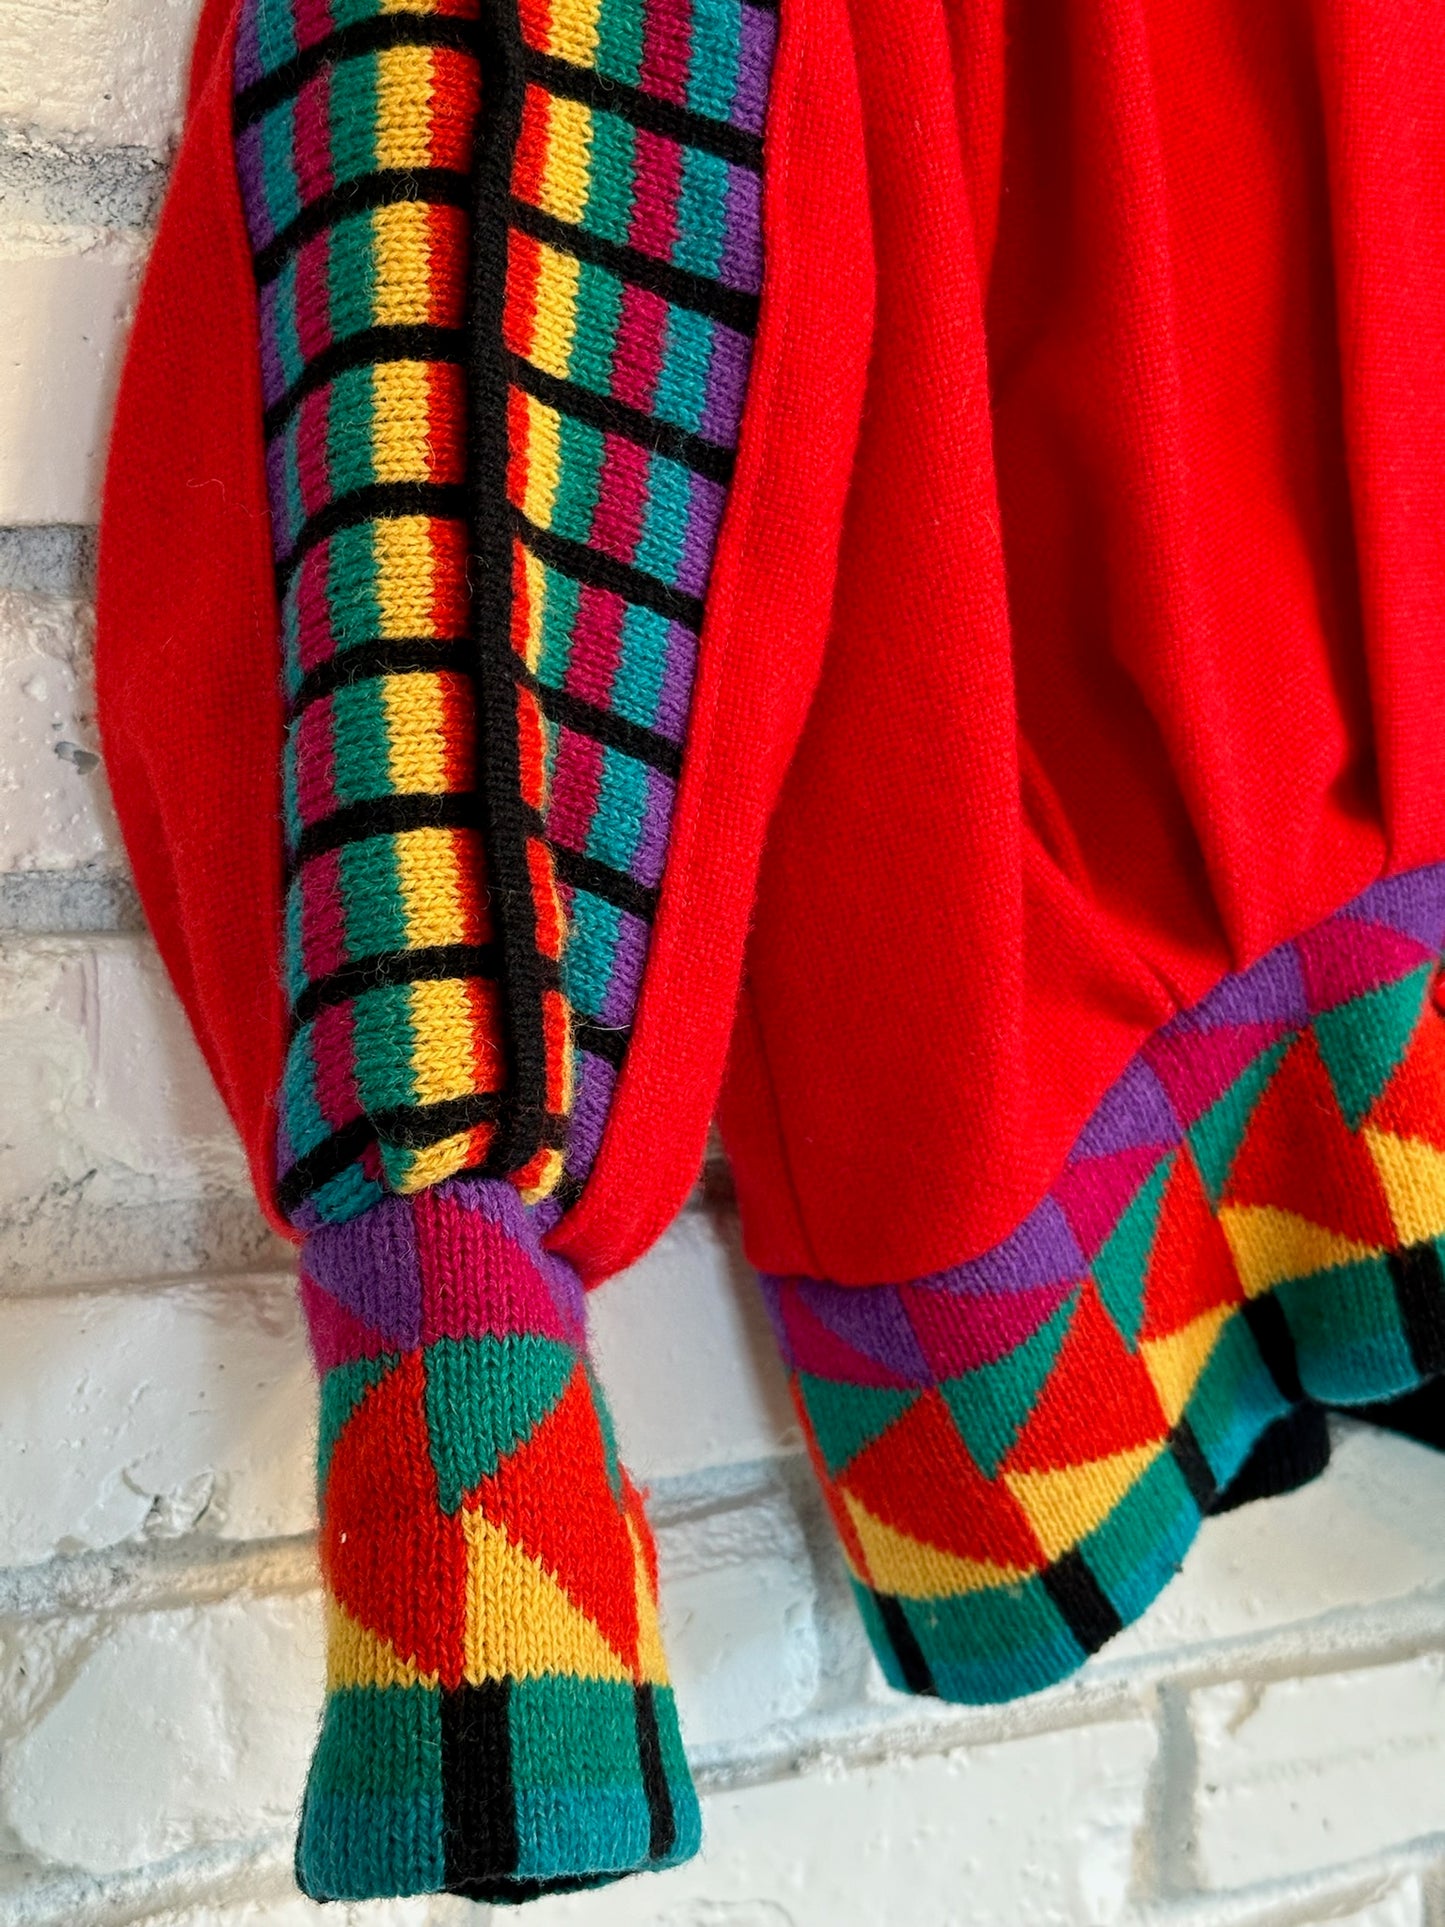 The Ragamuffin Rainbow Sweater